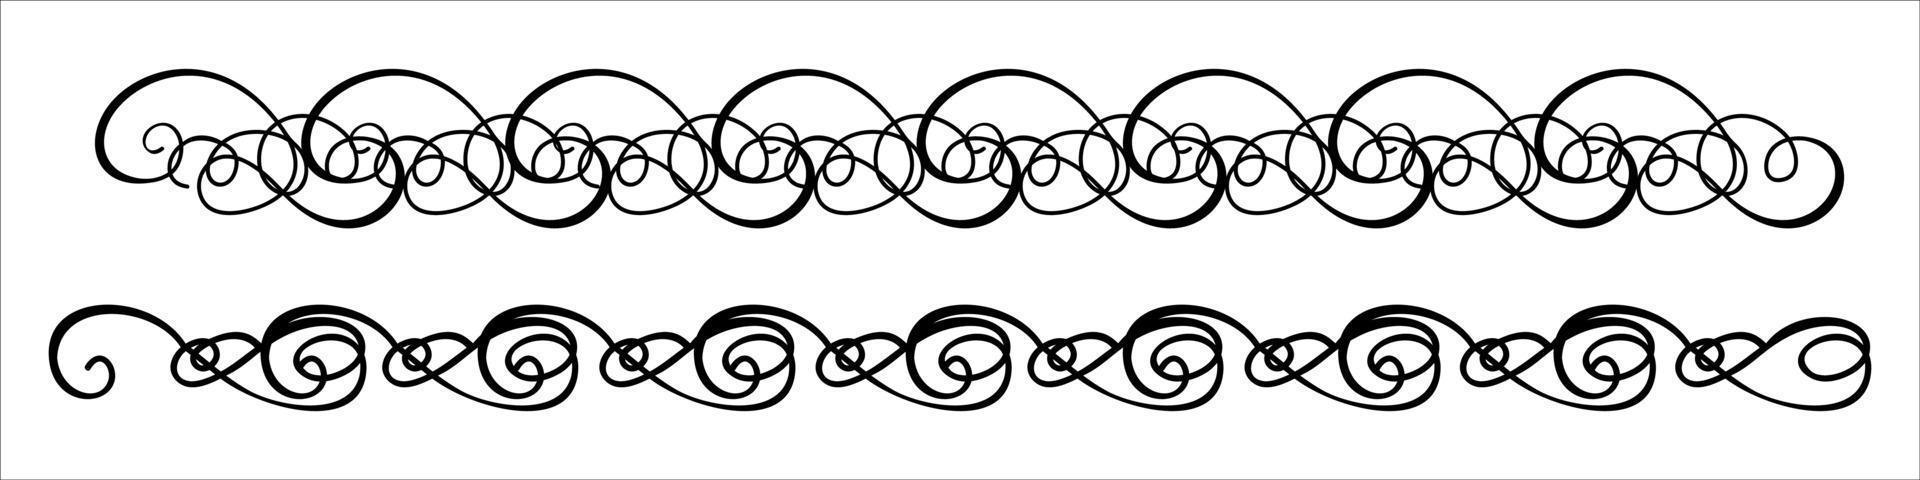 calligraphic borders vector